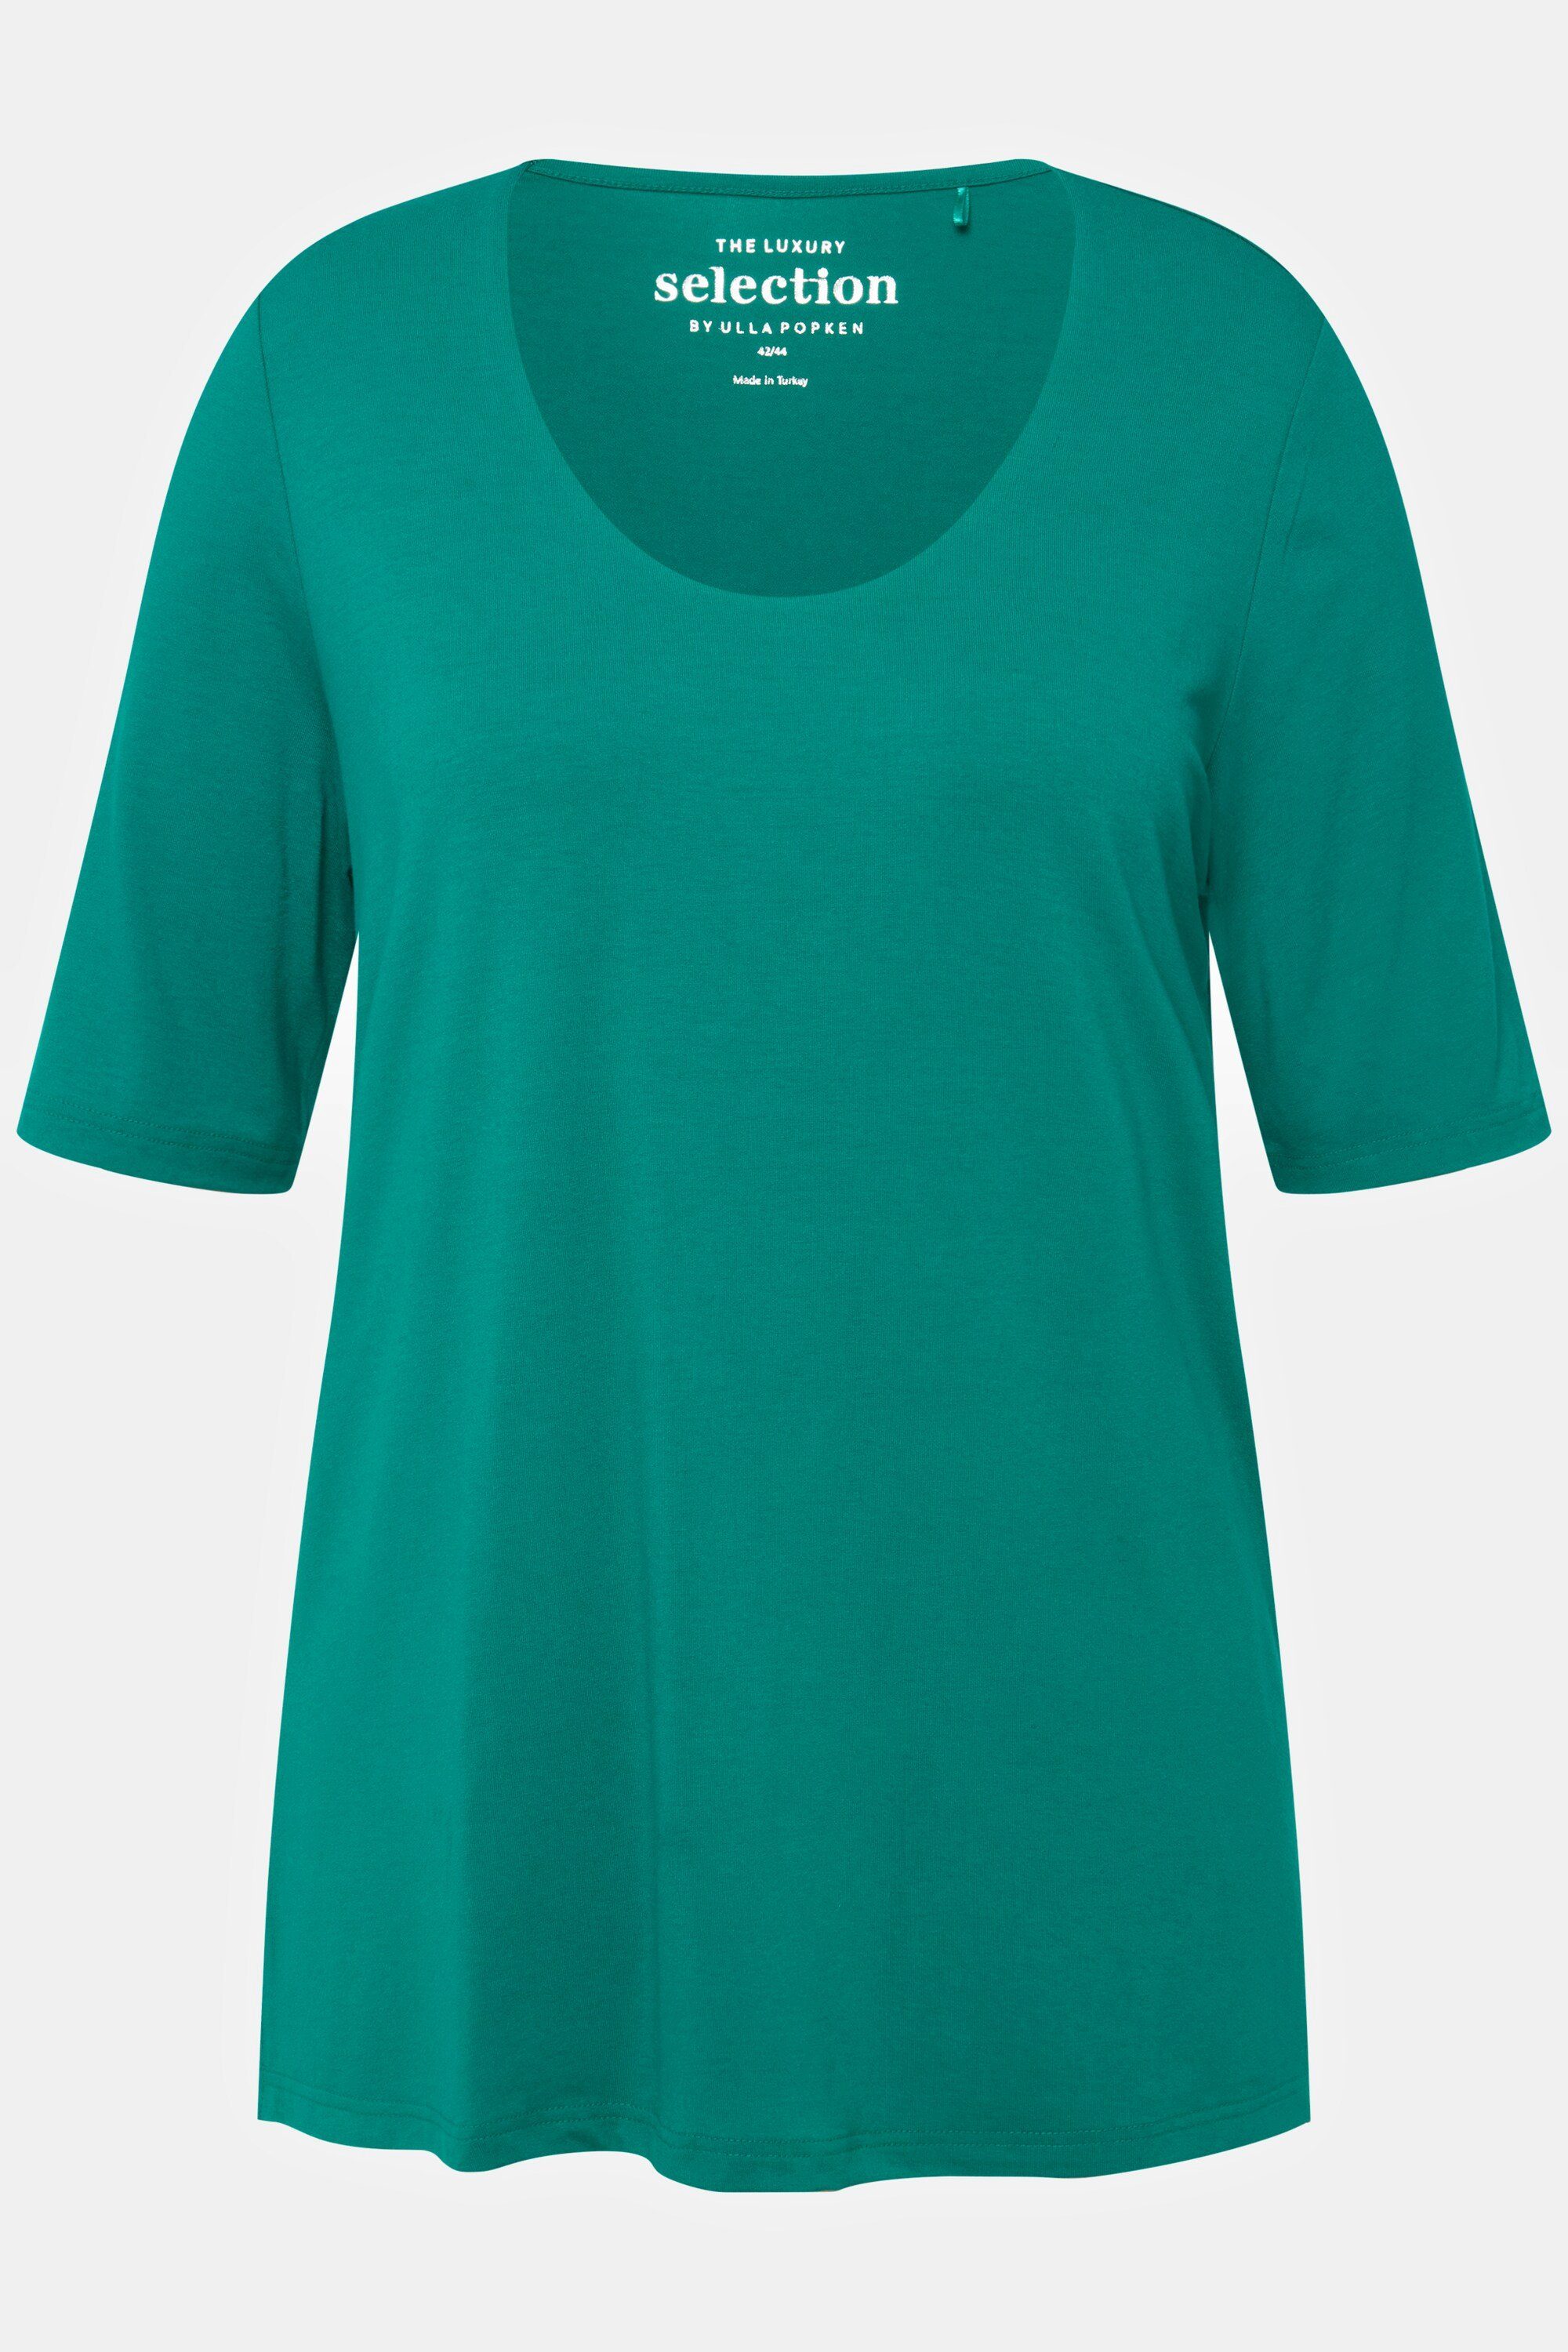 Ulla Popken Rundhalsshirt T-Shirt doppellagig vorne grünblau Halbarm V-Ausschnitt